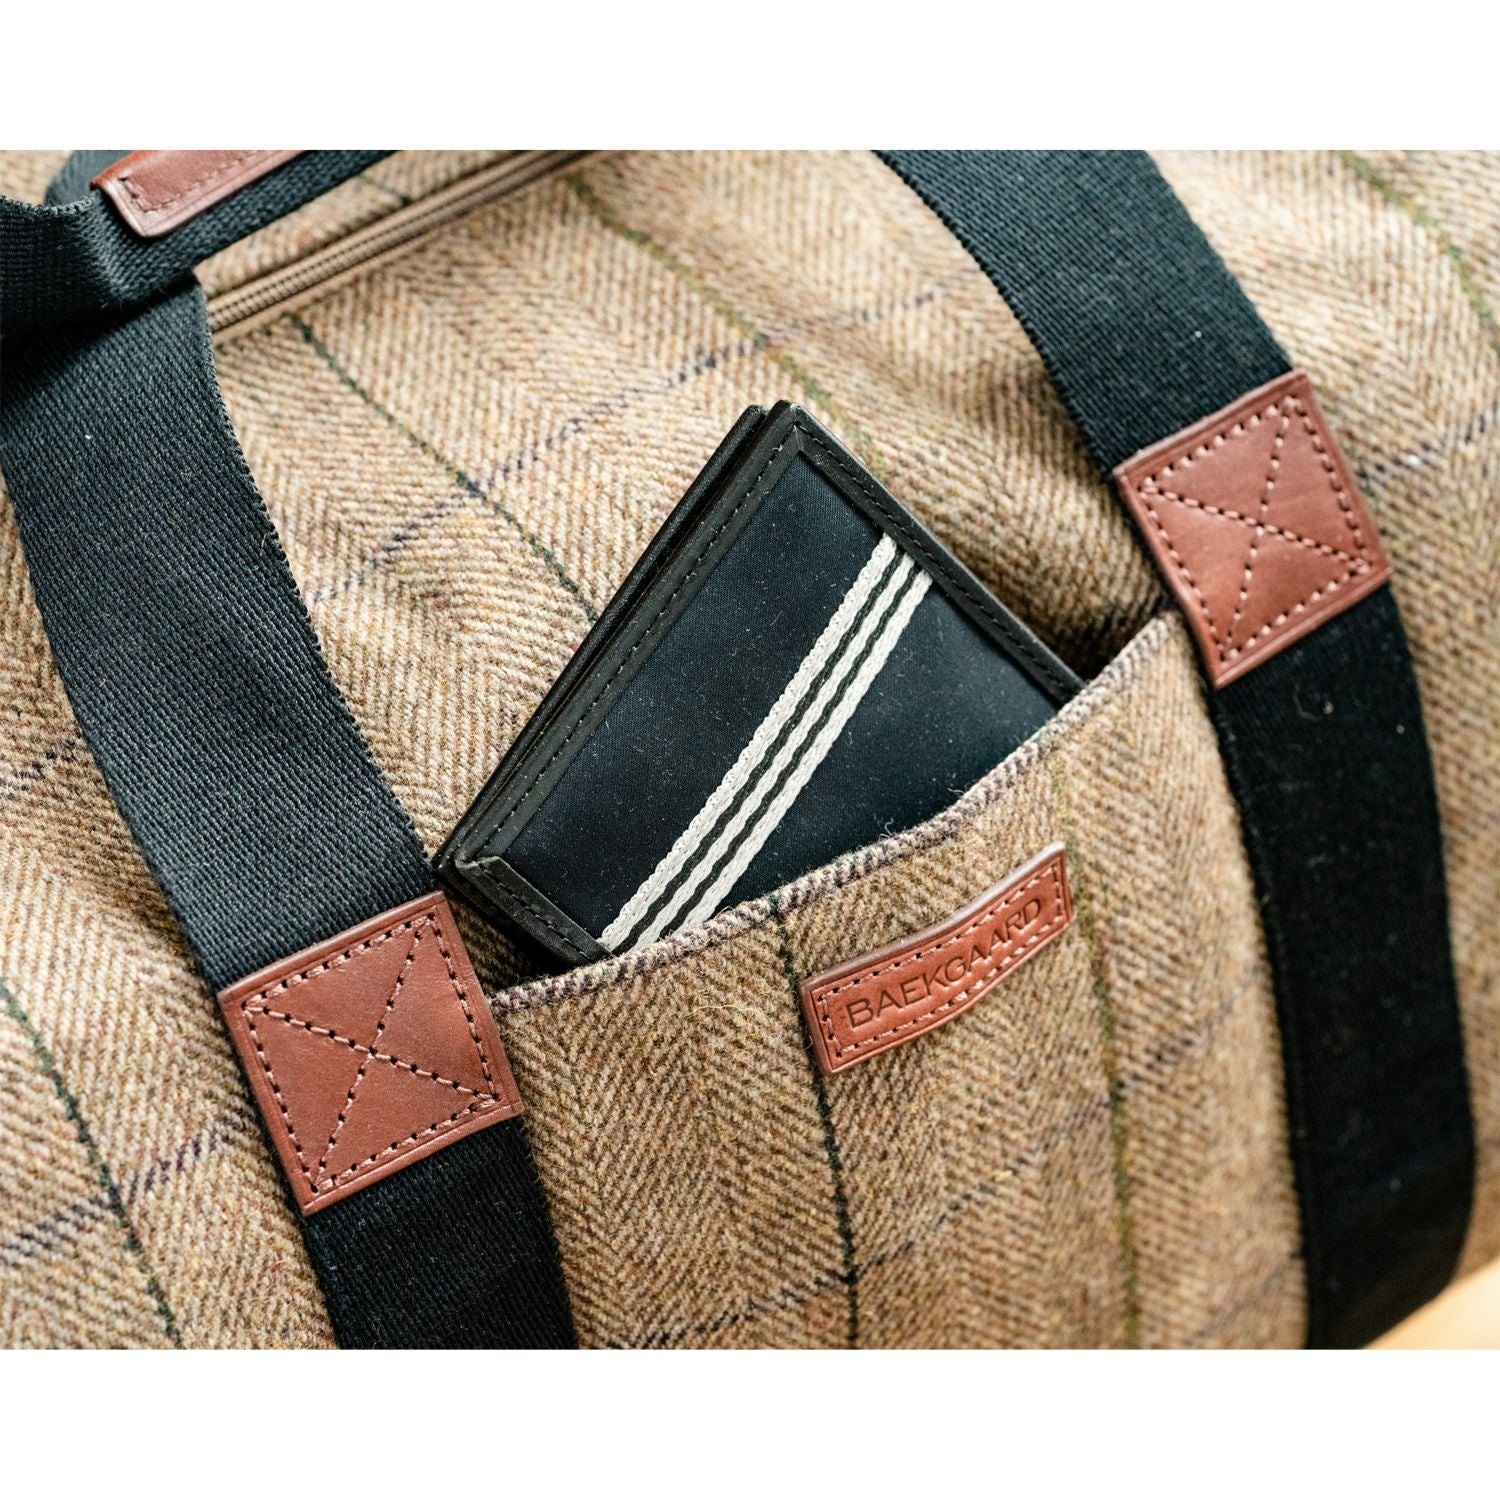 Clark Duffel Bag in Brown Tweed by Baekgaard